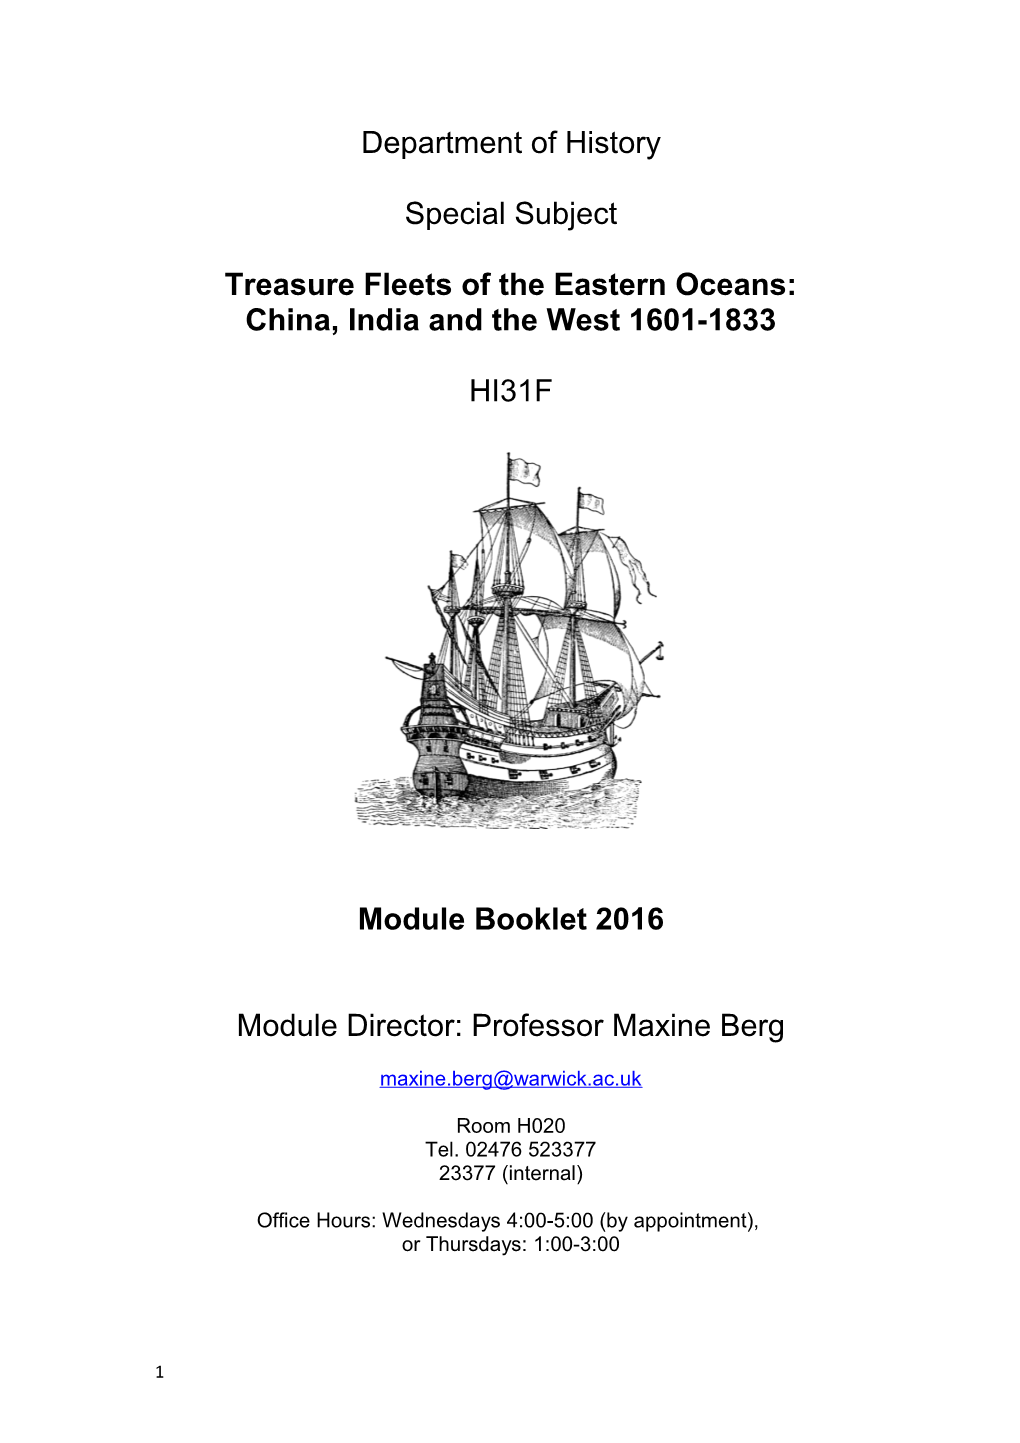 Treasure Fleets of the Eastern Oceans